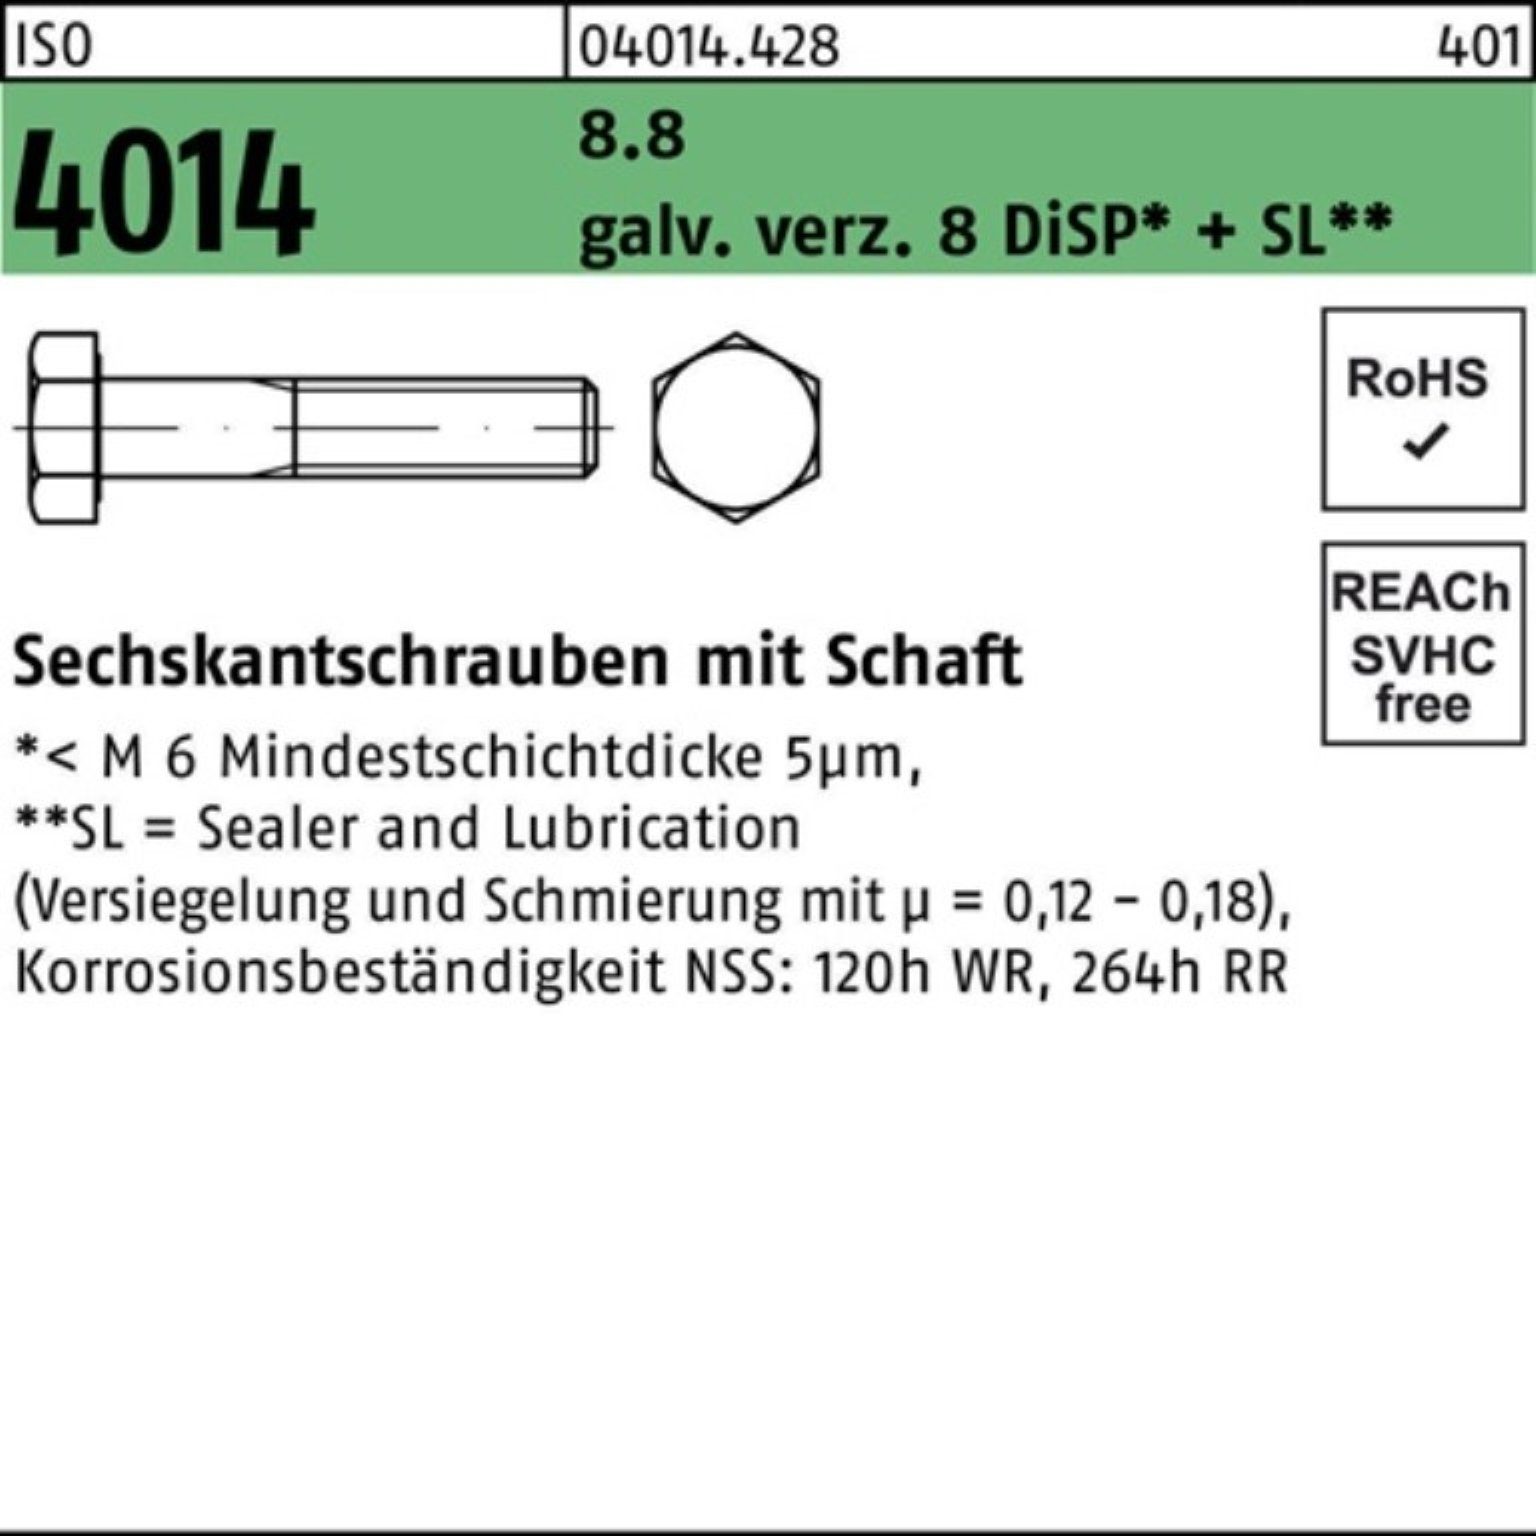 Bufab Sechskantschraube 100er Pack Sechskantschraube ISO 4014 Schaft M8x95 8.8 galv.verz. 8 Di